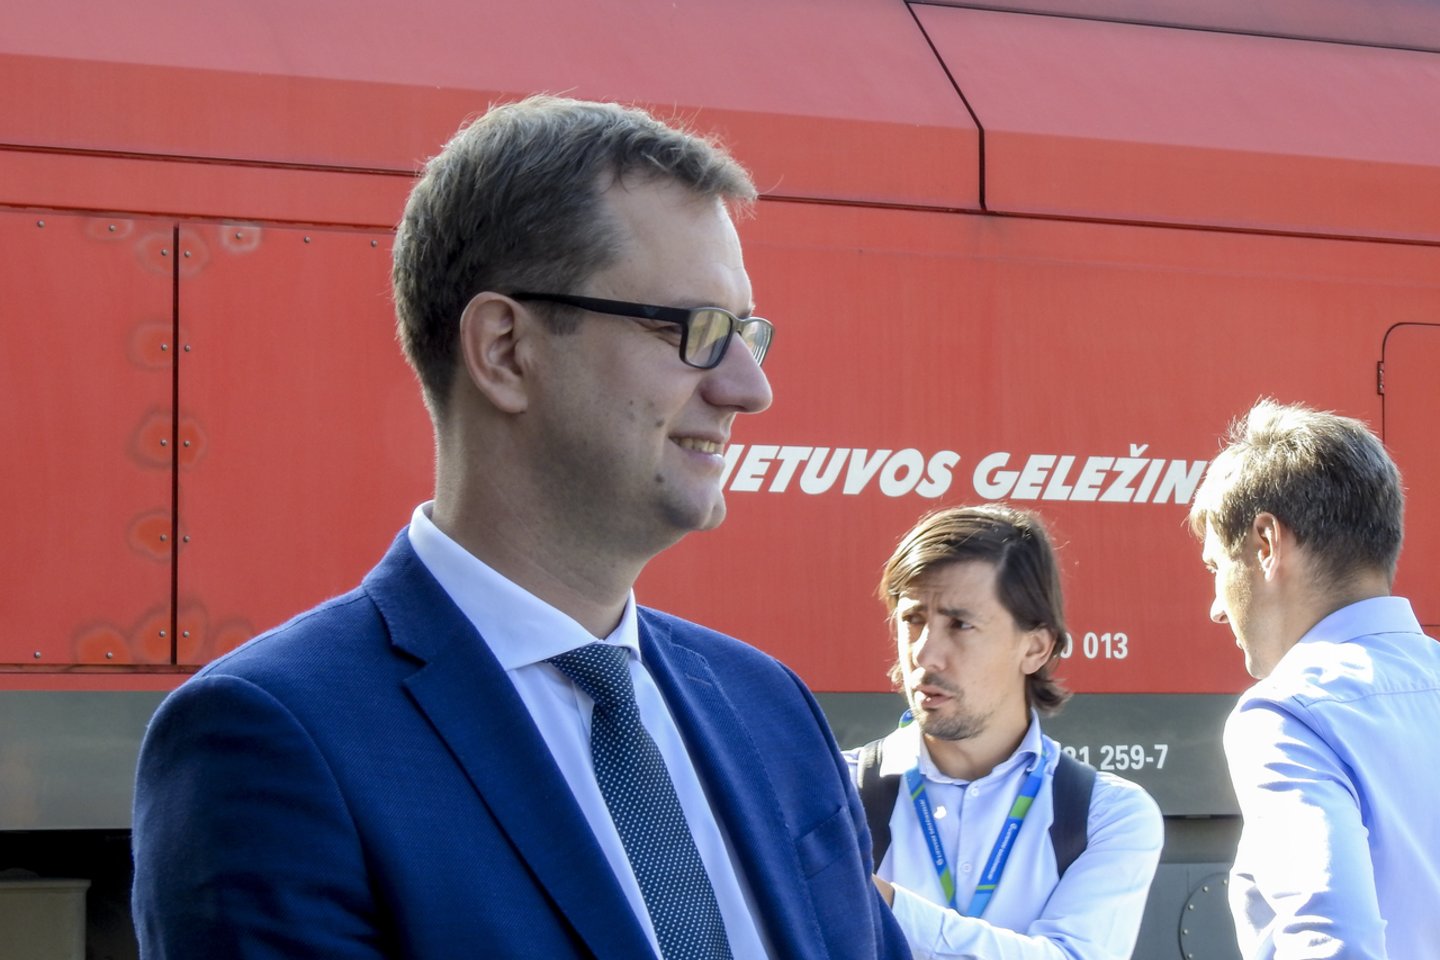  44 lokomotyvų, kurie perveža daugiau nei pusę visų bendrovės krovinių, kapitalinio remonto darbai pirmą kartą patikėti inžinerinių kompetencijų partneriui Vilniaus lokomotyvų remonto depui (VLRD).<br> V.Ščiavinsko nuotr.